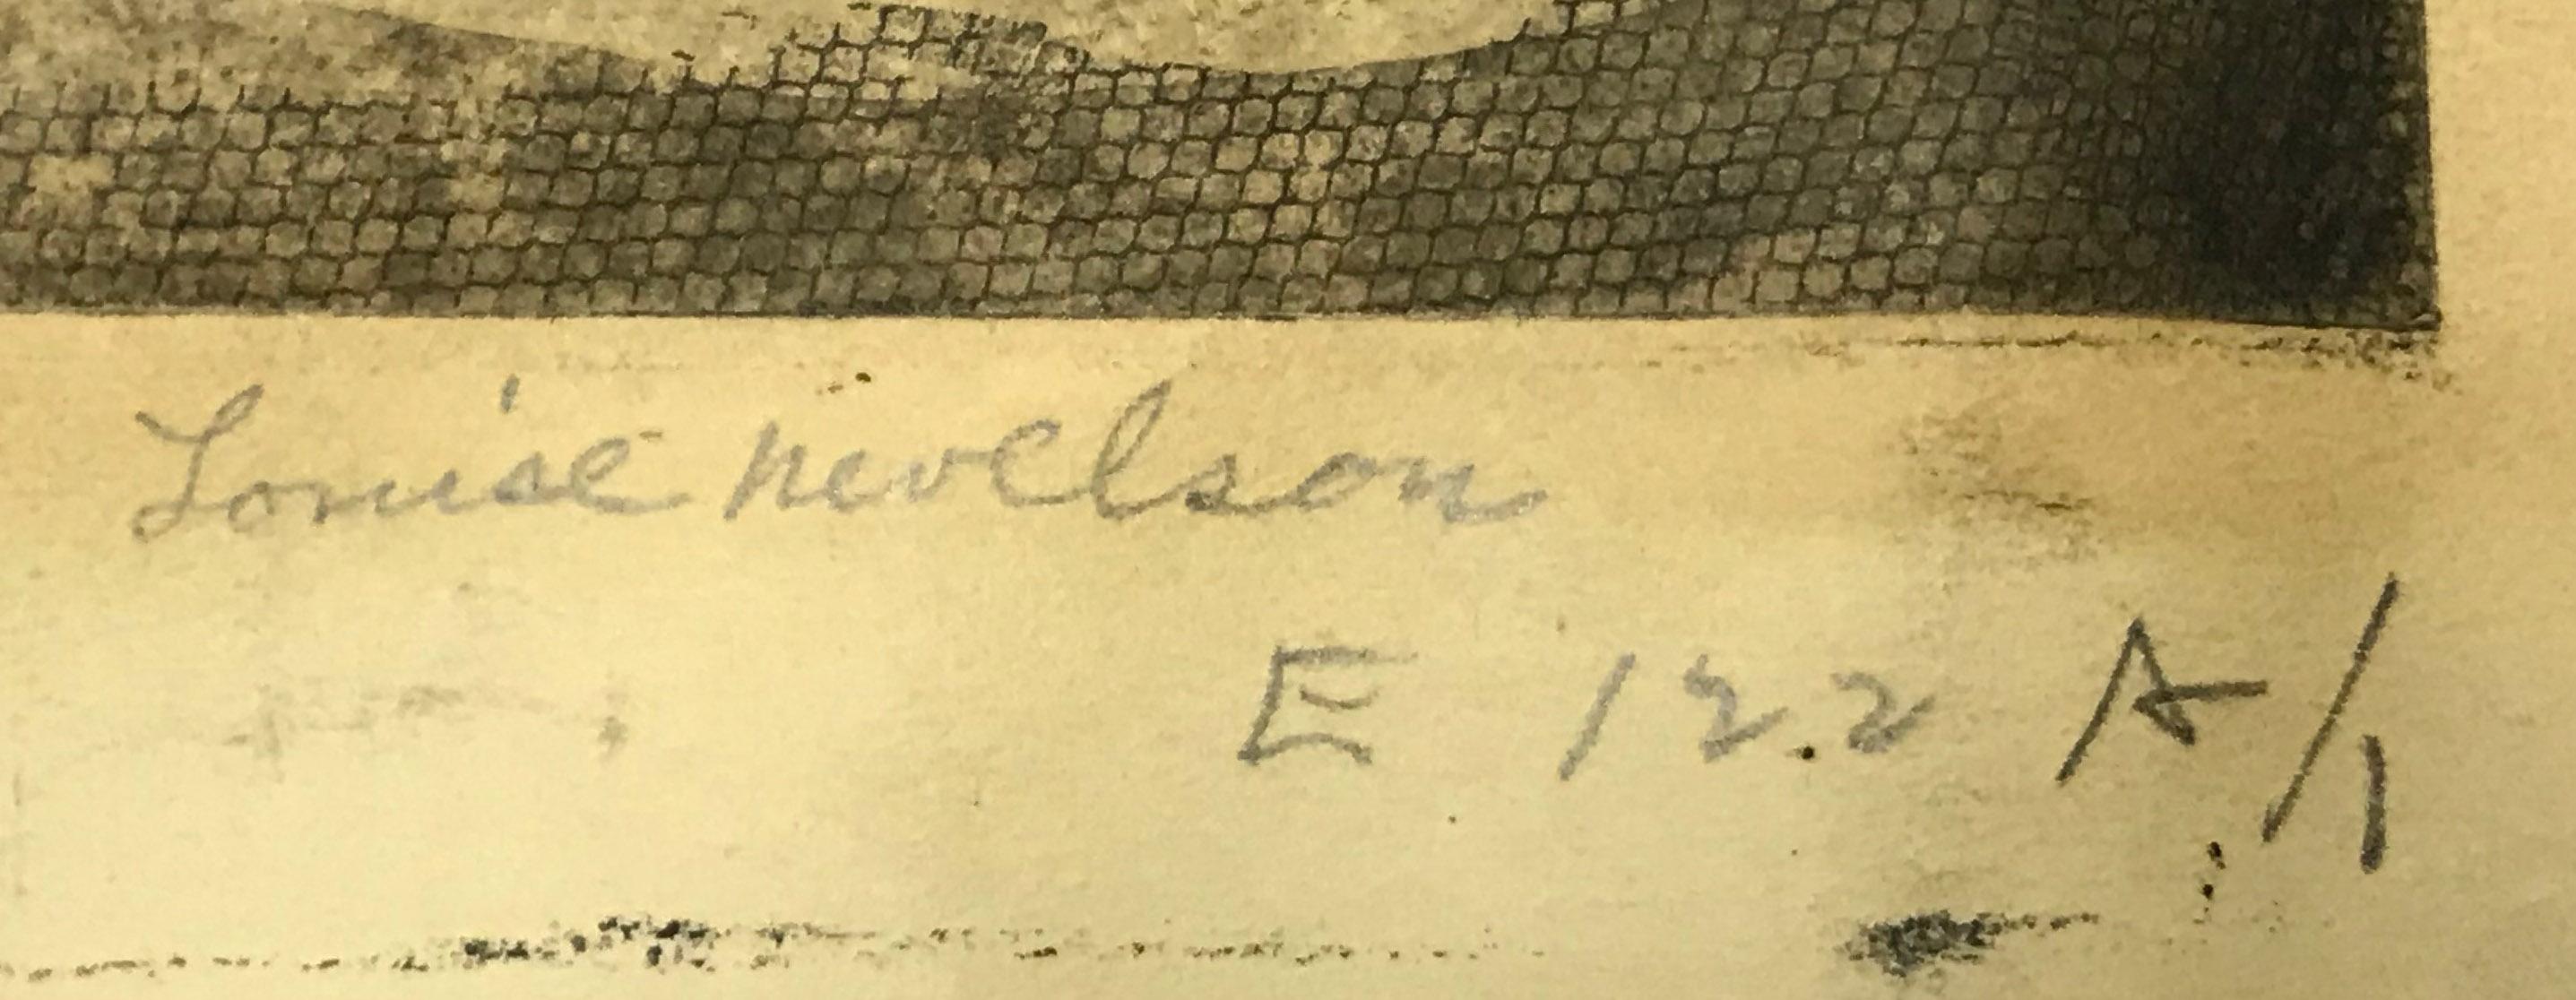 Arbres (arbres en cercle)
Gravure et pointe sèche avec encrage monotype, 1953-1955
Signé au crayon
Épreuve d'essai non répertoriée, imprimée sur du papier vélin épais à l'Atelier 17, avant la réduction de la plaque. 
Référence : Baro 29
Provenance :